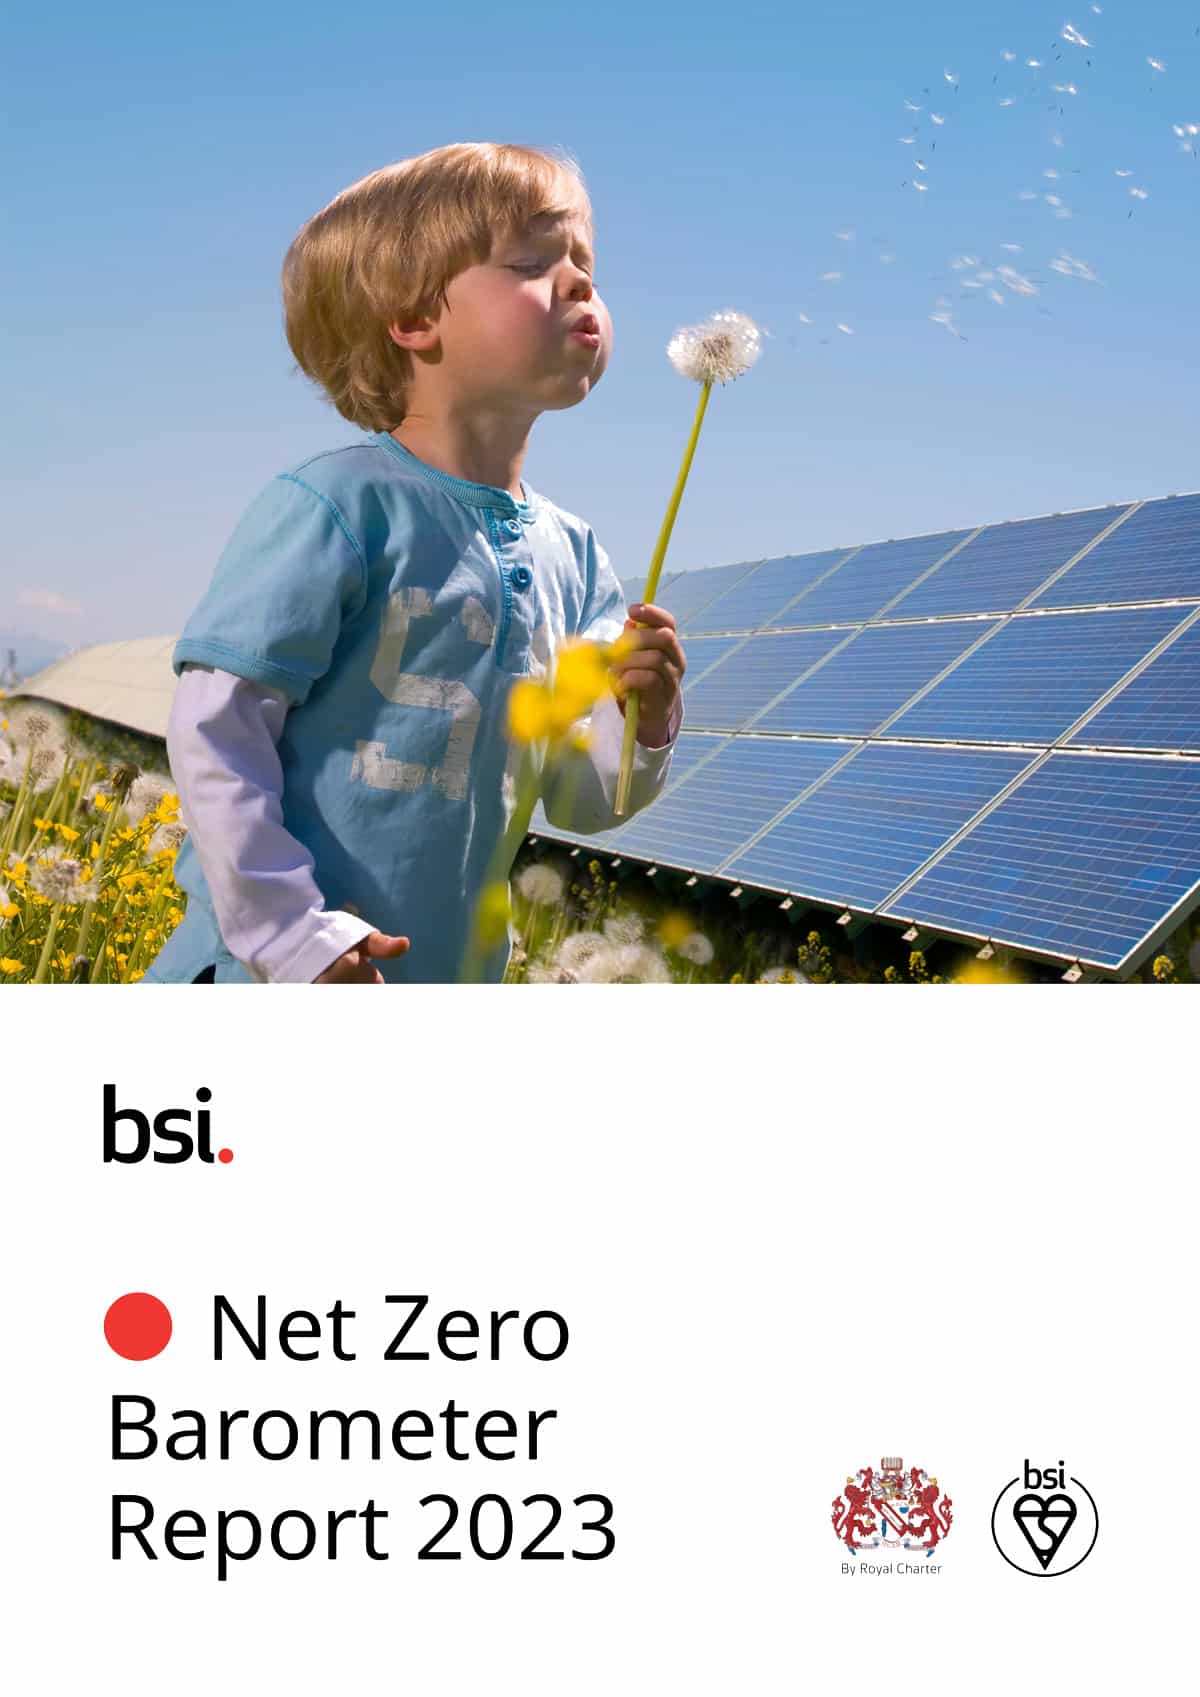 BSI Net Zero Barometer Report 2023